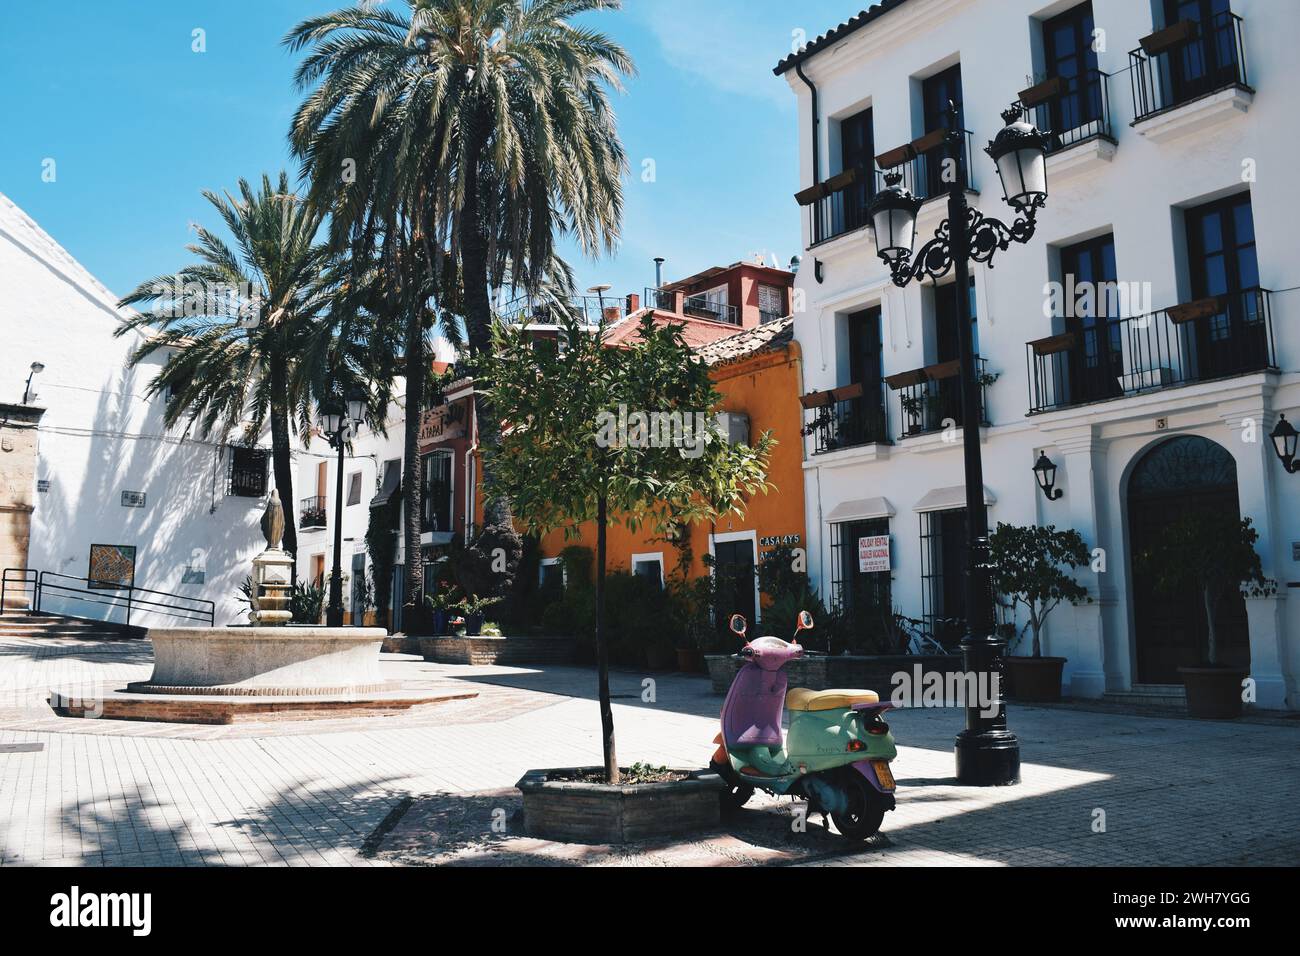 Kleiner Platz mit bunten Fassaden in Marbella in Andalusien, Spanien, am 11. August 2017 Stockfoto